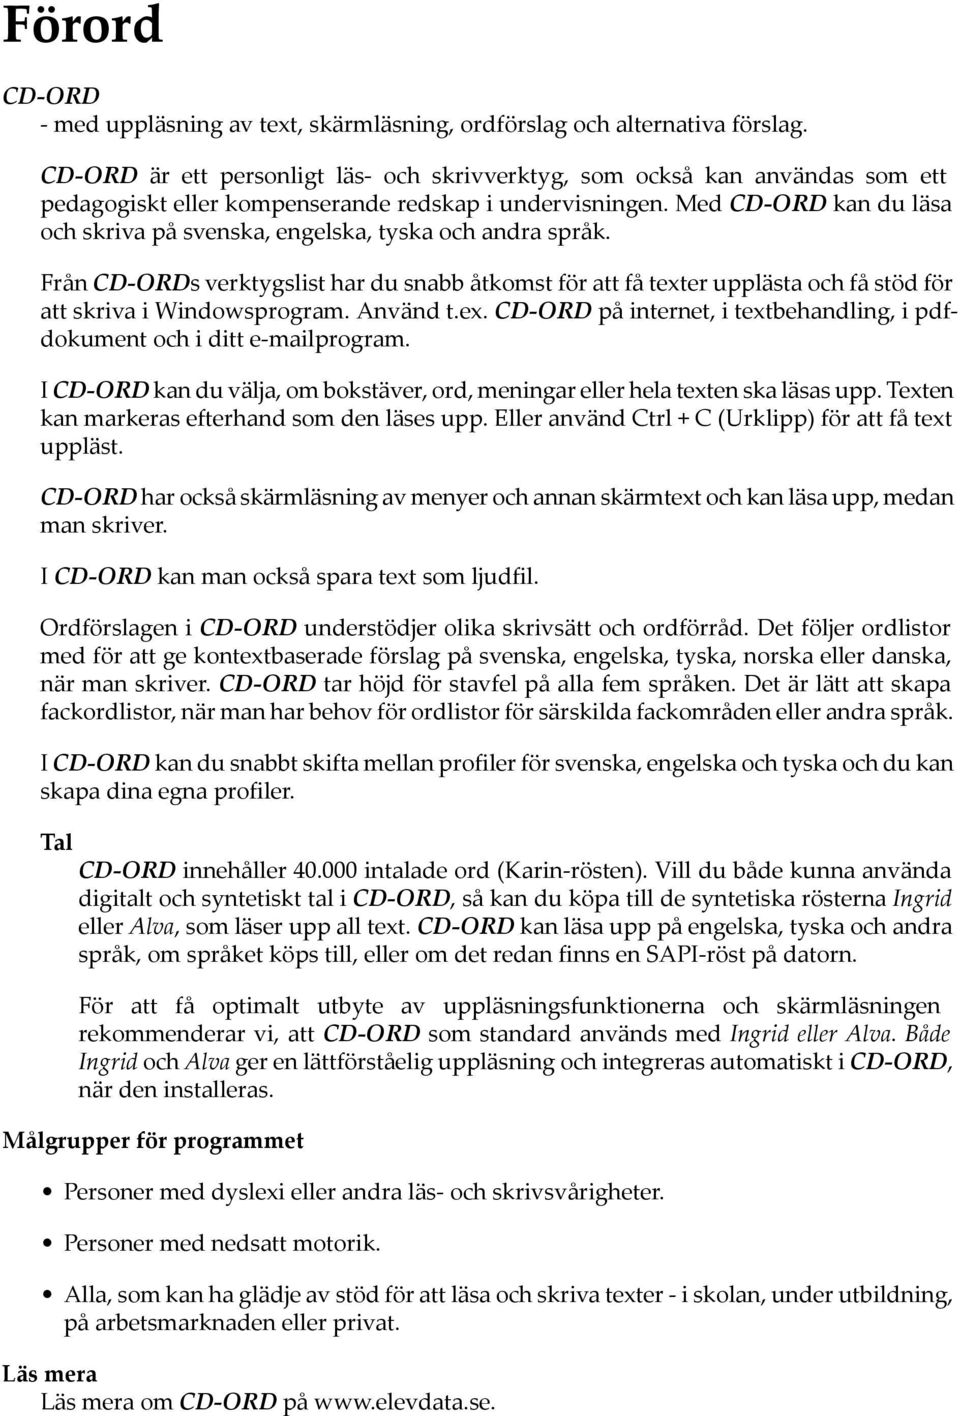 Med CD-ORD kan du läsa och skriva på svenska, engelska, tyska och andra språk. Från CD-ORDs verktygslist har du snabb åtkomst för att få texter upplästa och få stöd för att skriva i Windowsprogram.